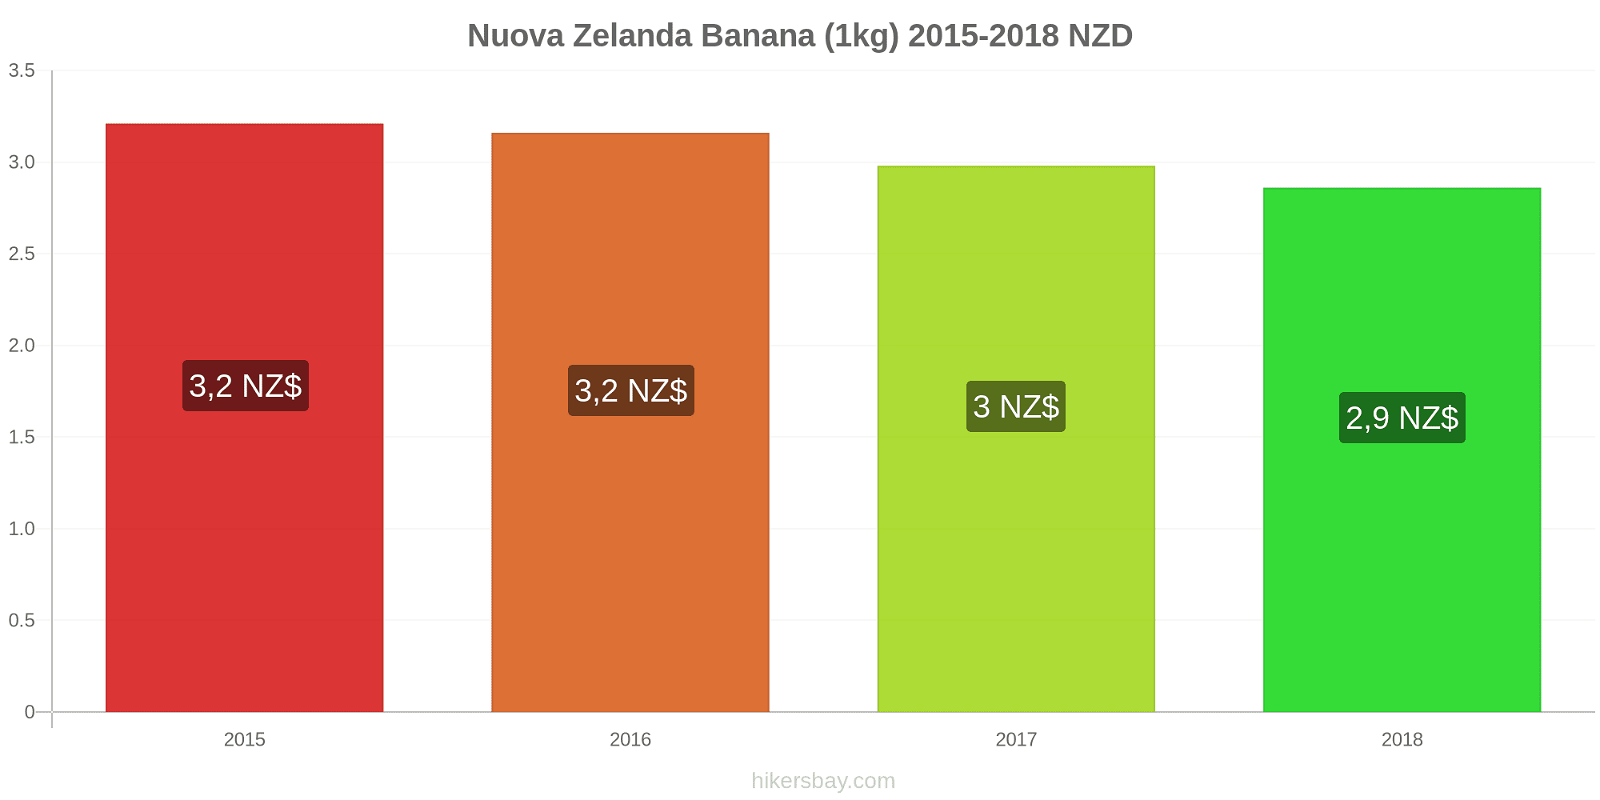 Nuova Zelanda cambi di prezzo Banane (1kg) hikersbay.com